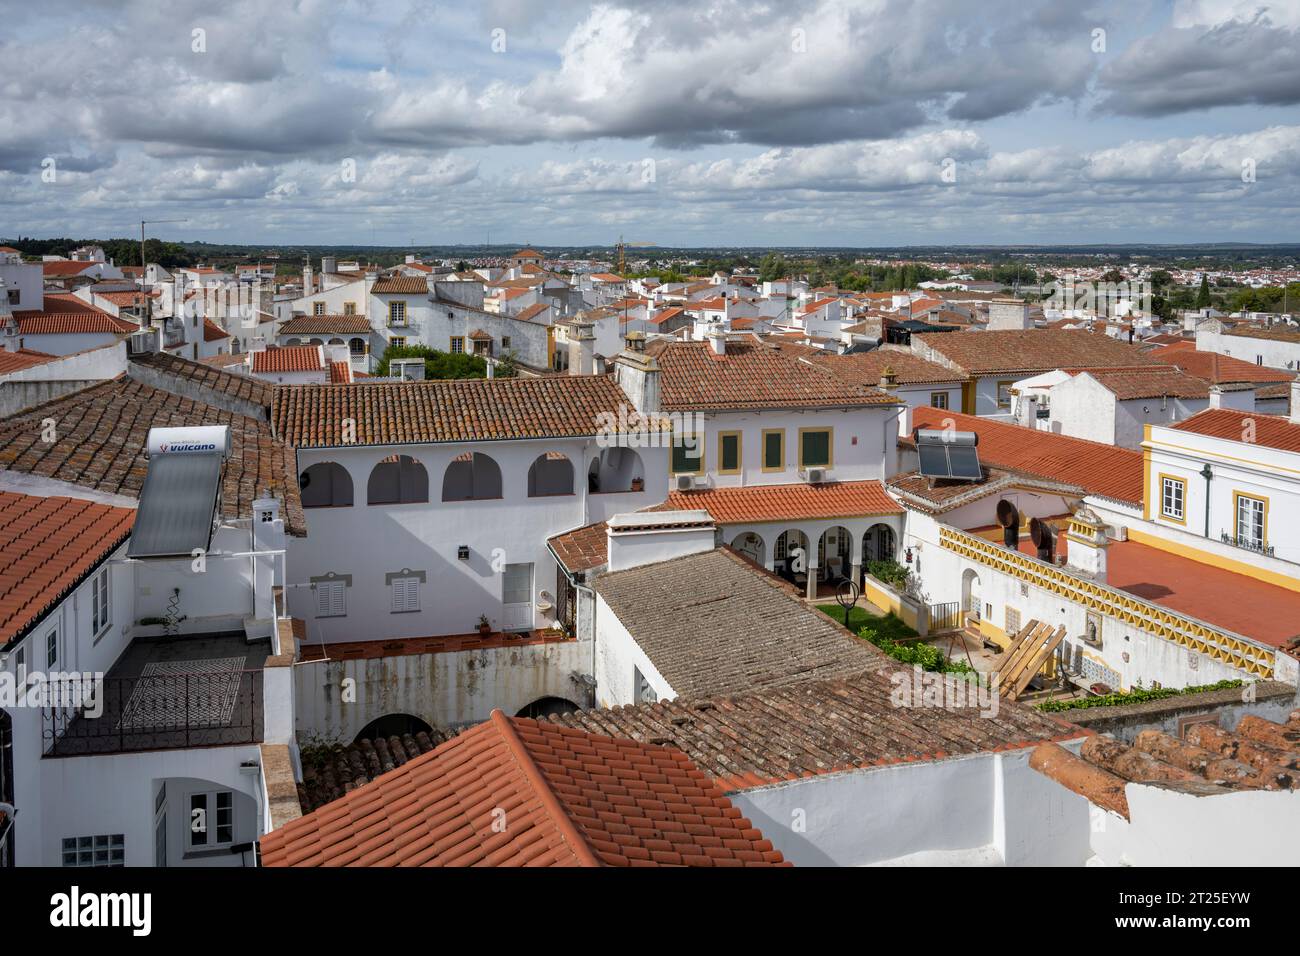 Toits et paysage urbain de la vieille ville d'Evora, Alentejo, Portugal Banque D'Images